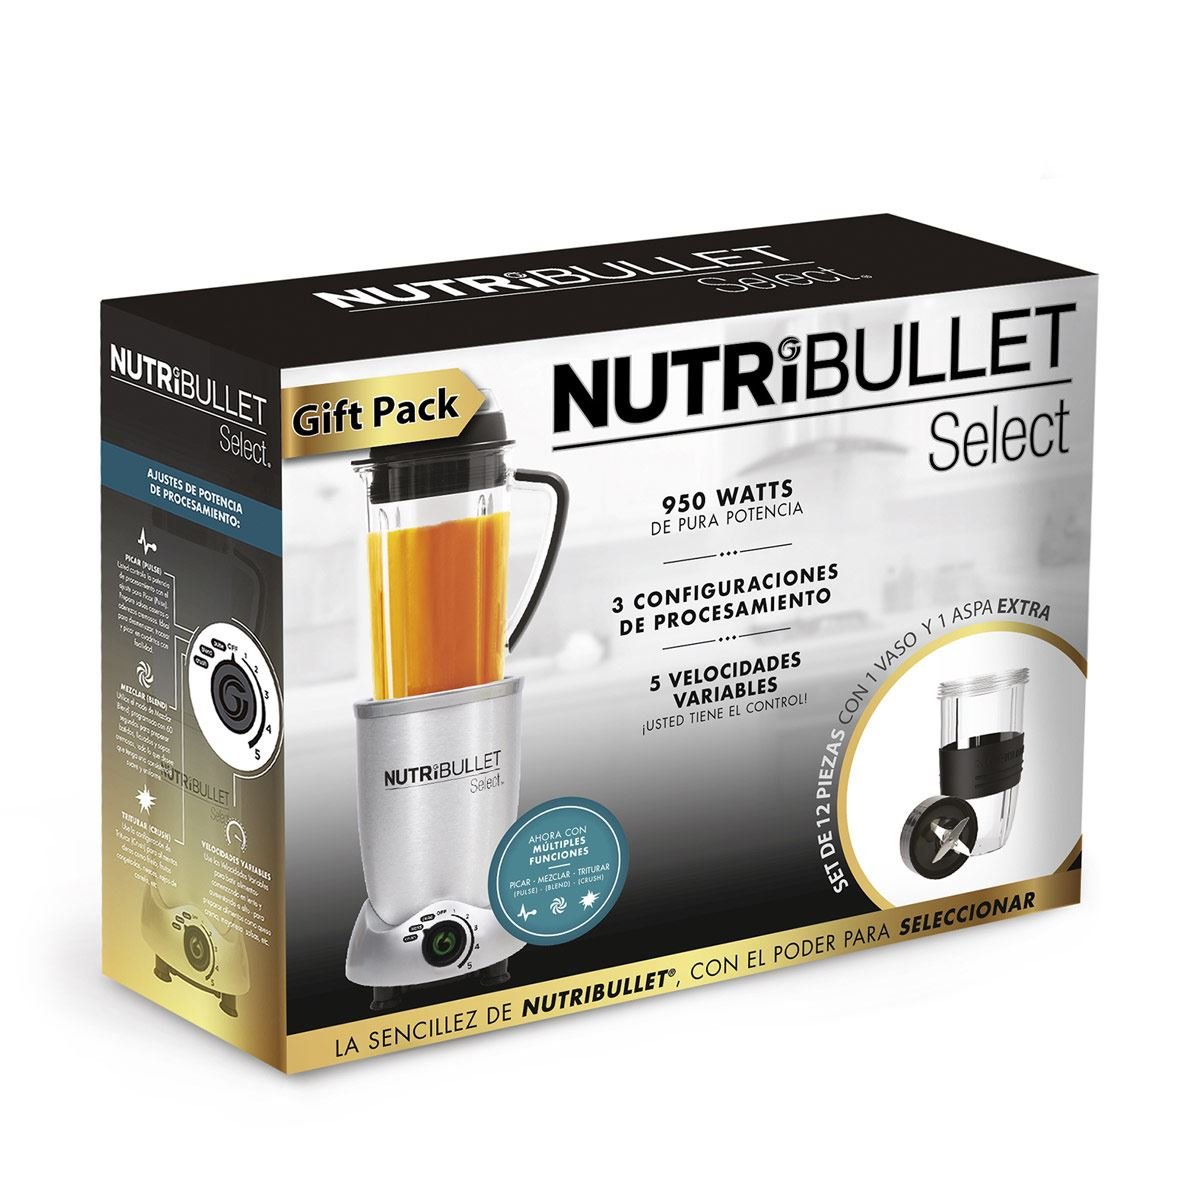 Gift Pack Nutribullet Select